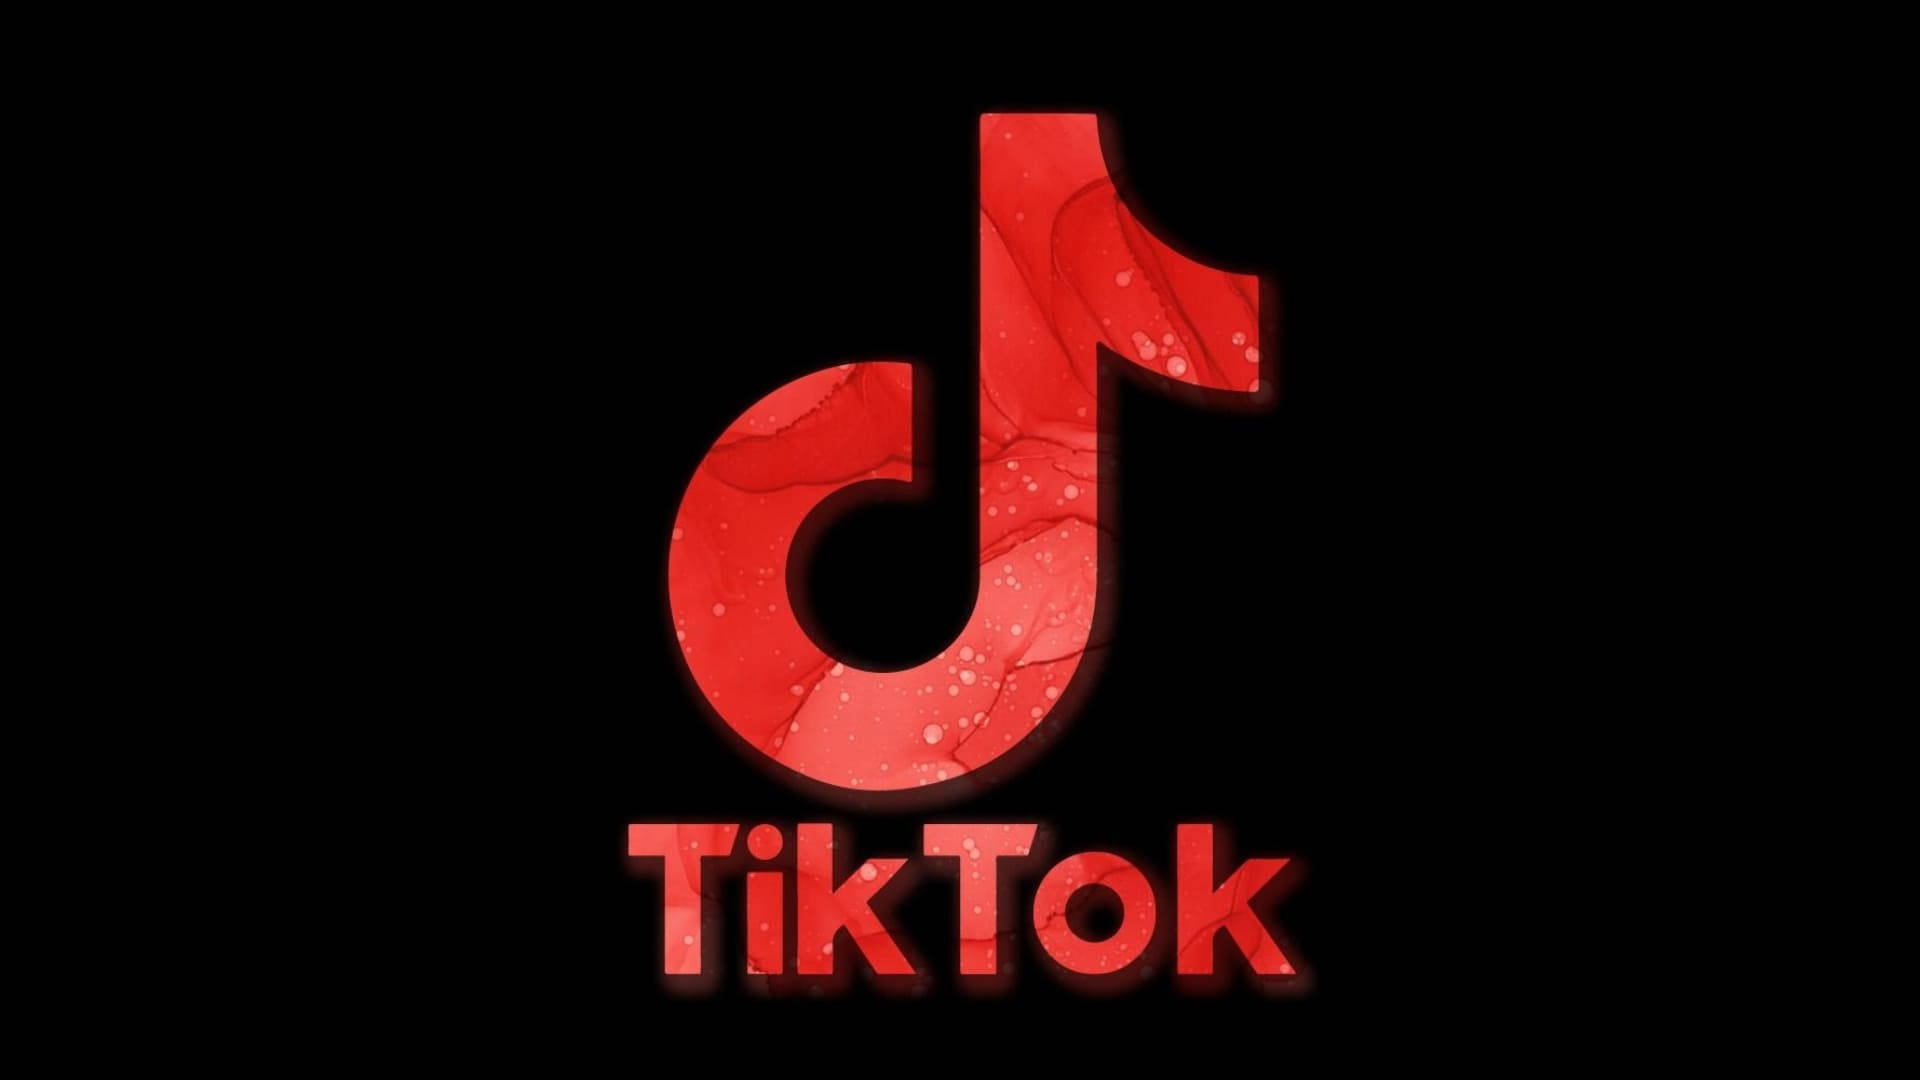 Tiktok logo in red - TikTok